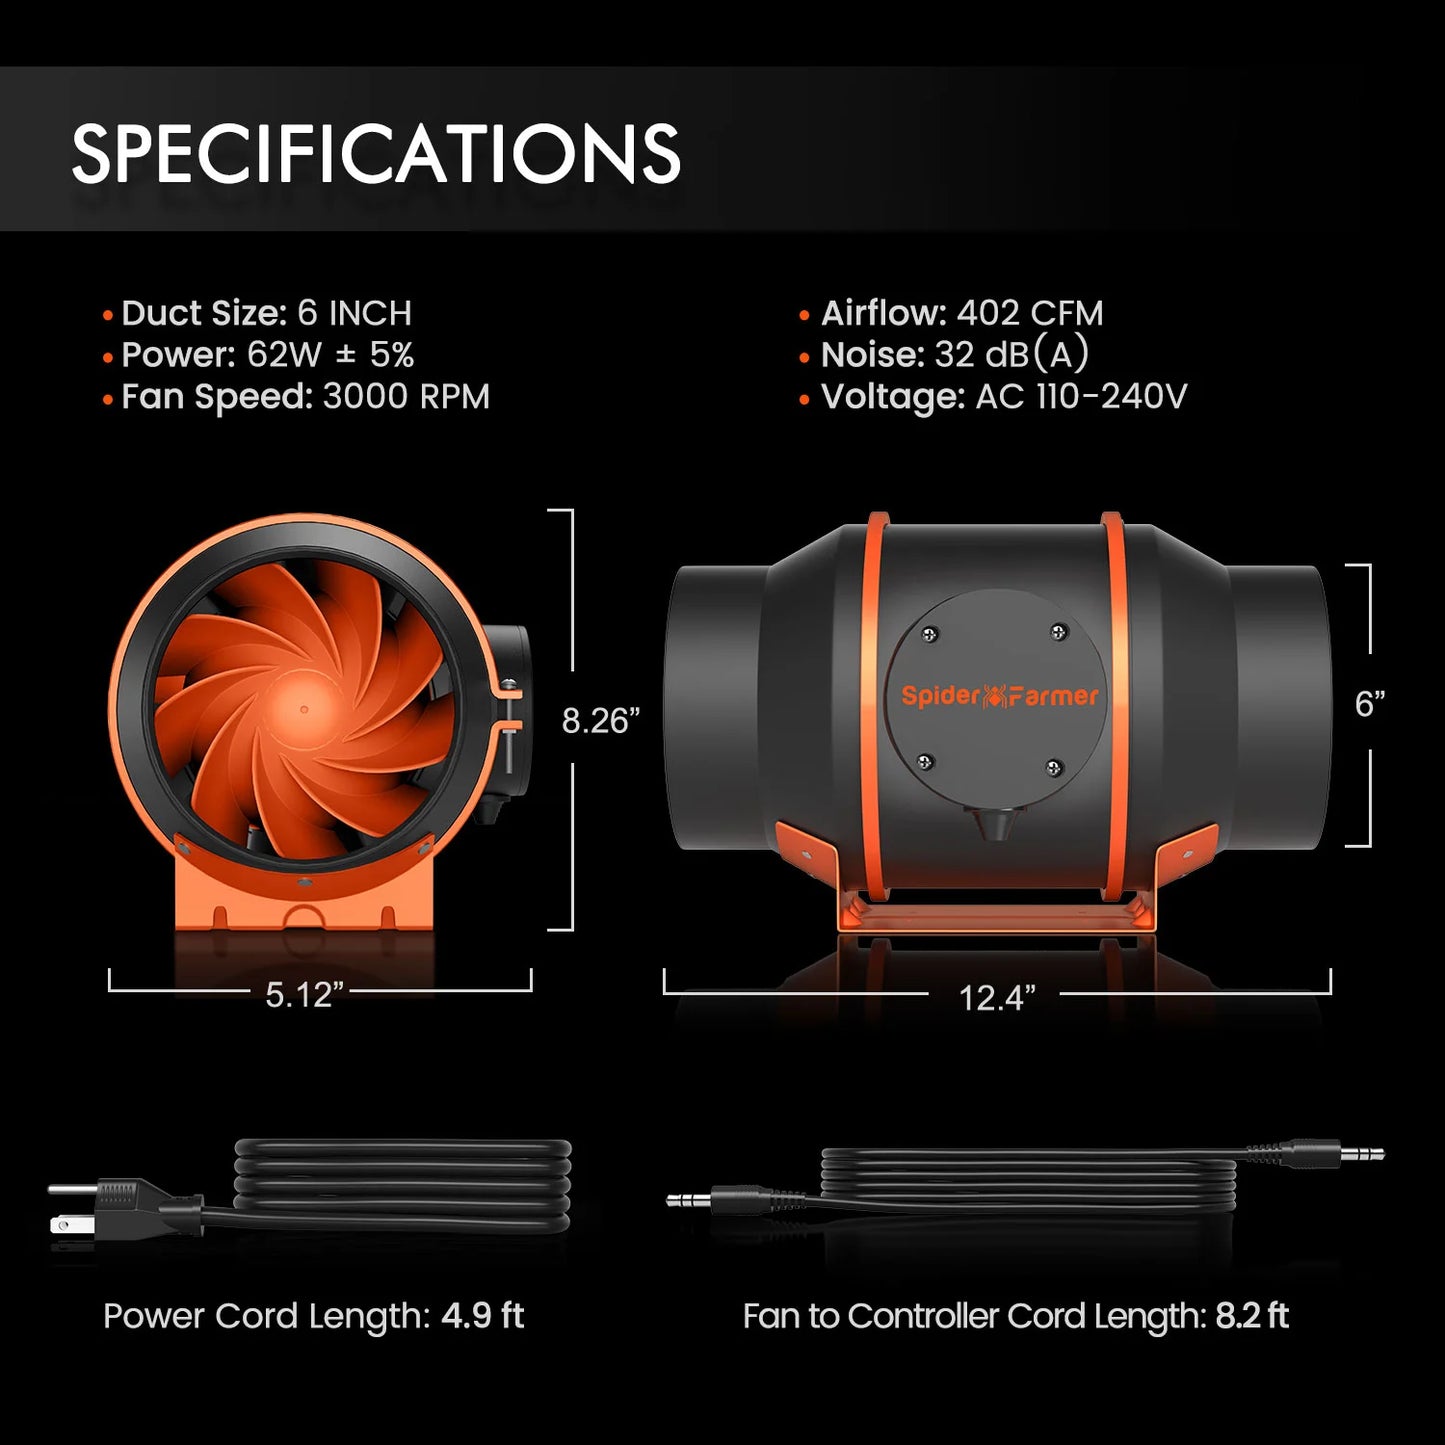 Spider Farmer 6 Zoll Inline-Kanalventilator Abluftventilator mit Geschwindigkeitsregler